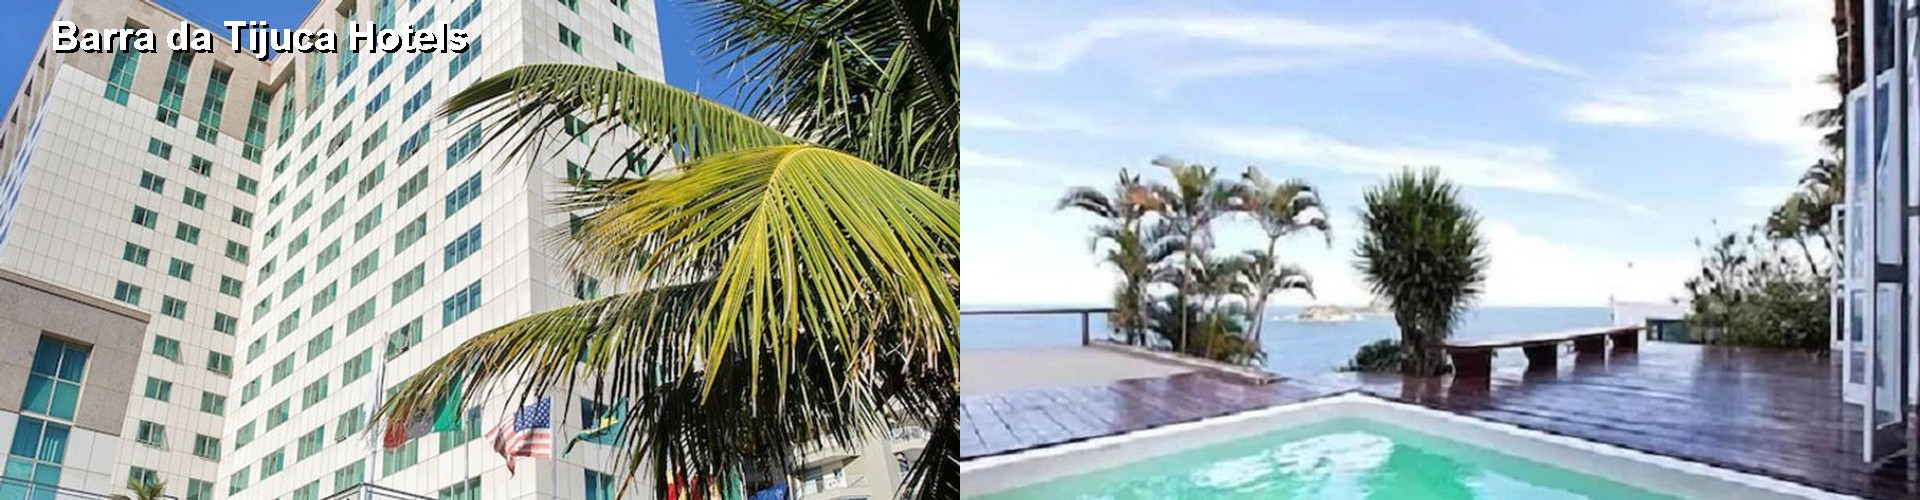 5 Best Hotels near Barra da Tijuca